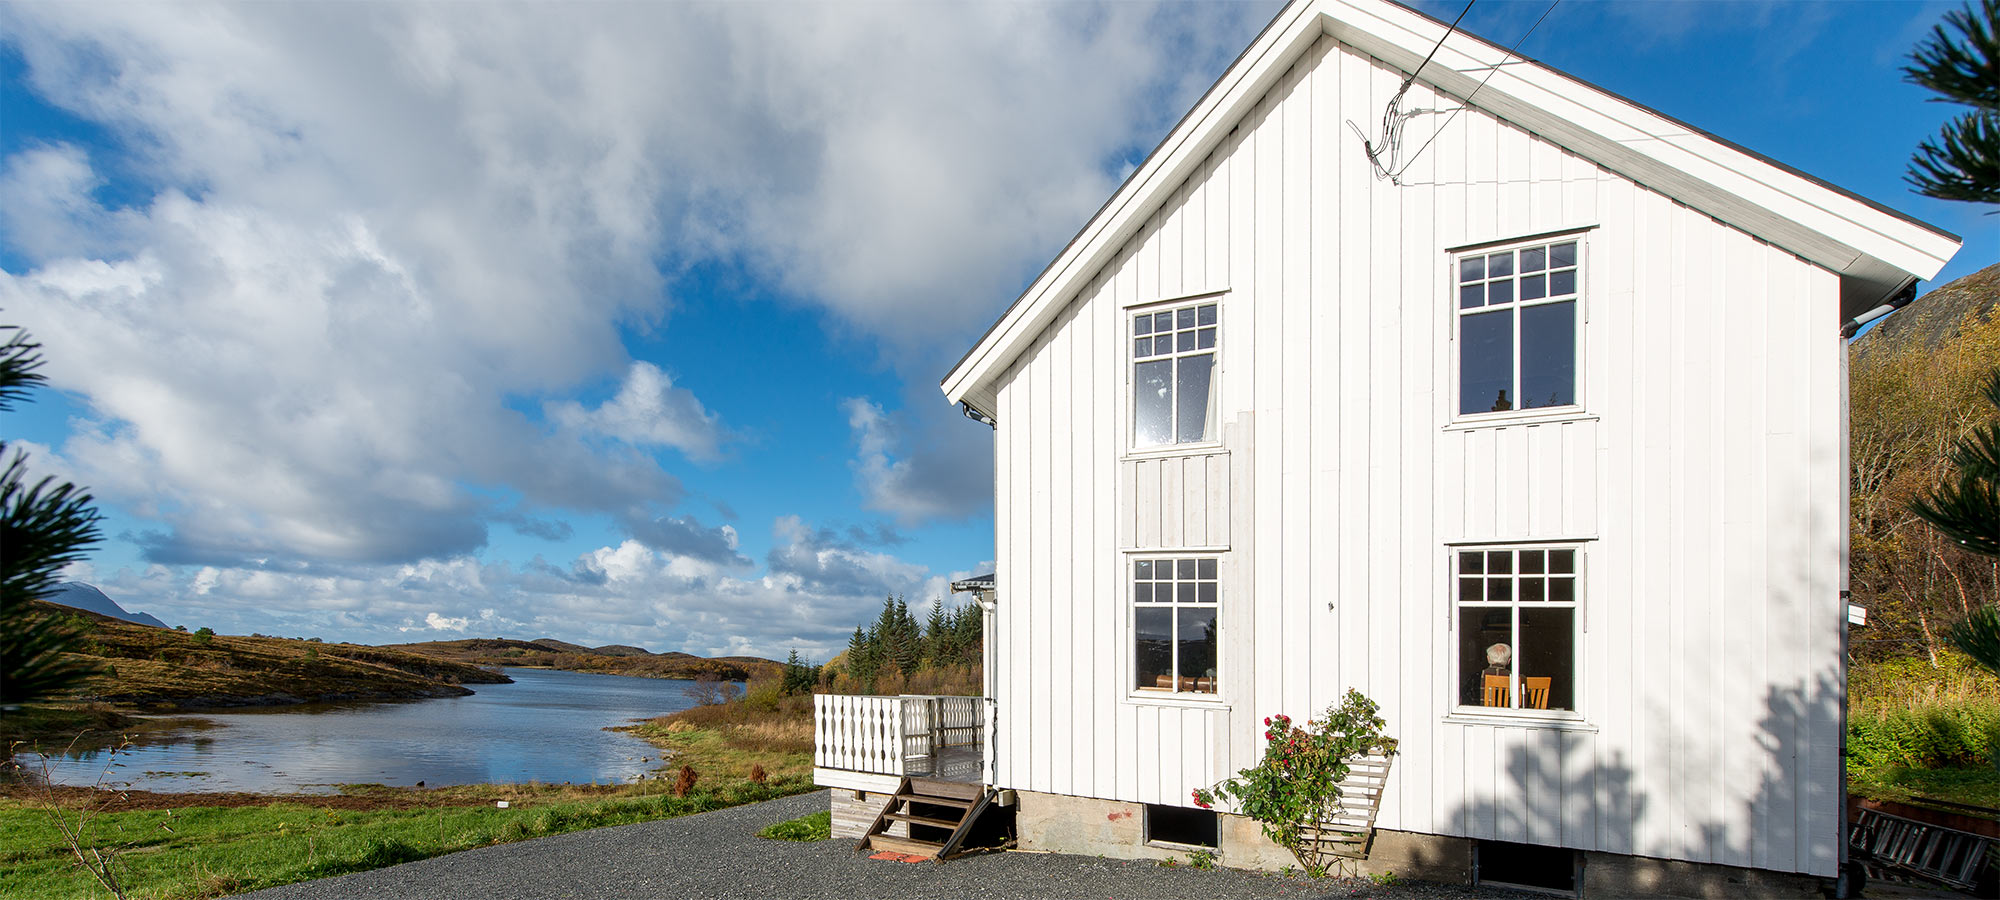 Fotoreise Norwegen unser Haus